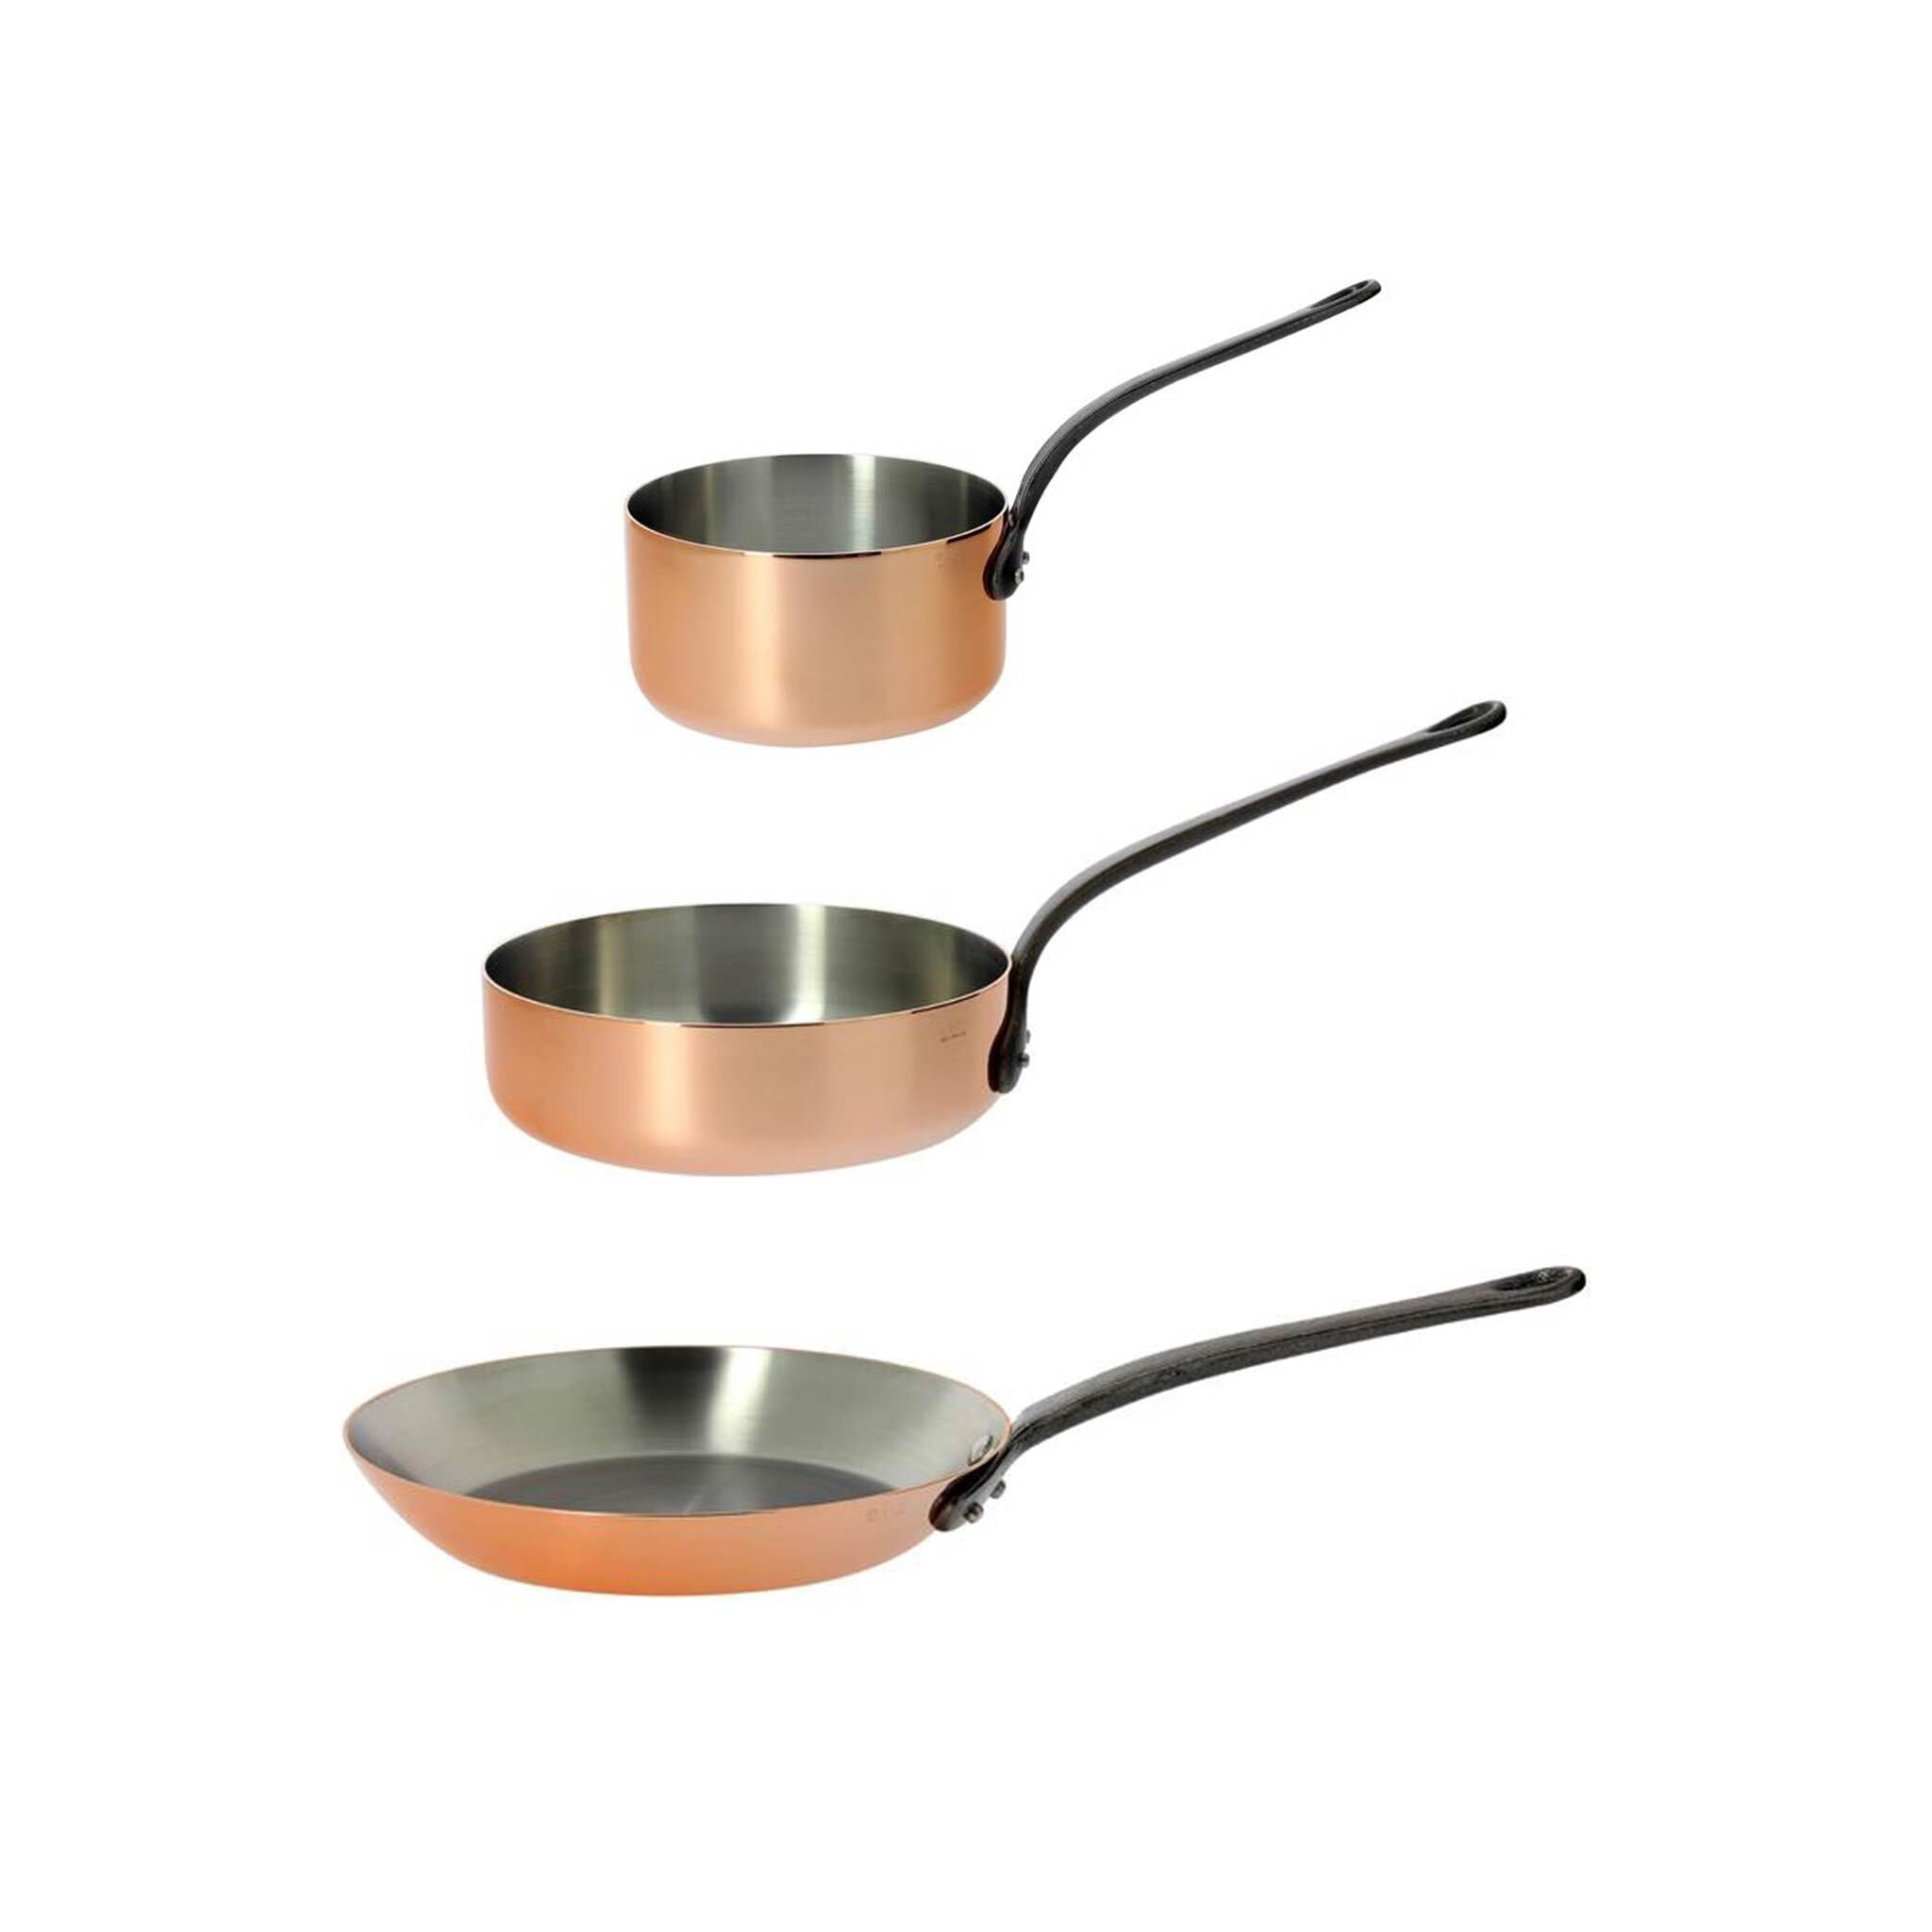 de Buyer Inocuivre Tradition Copper Conical Saute Pan